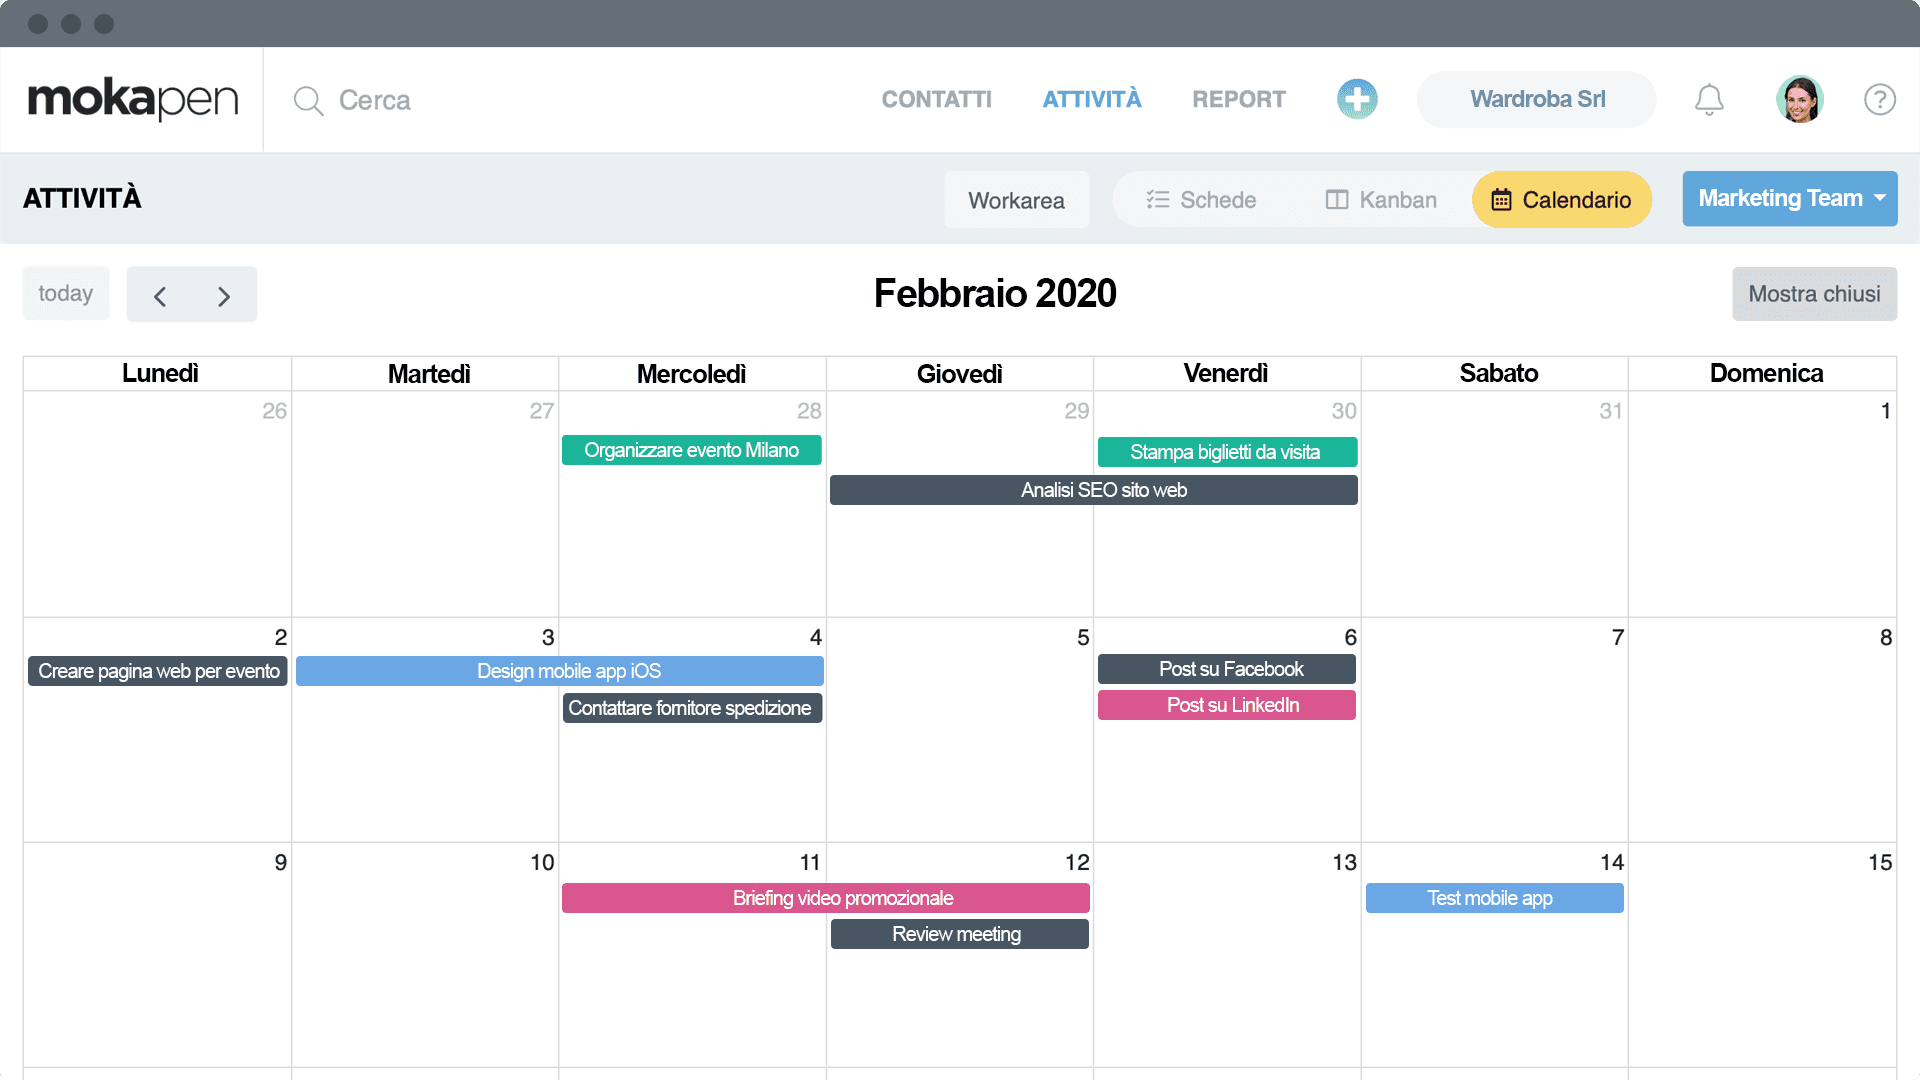 Attiva la vista calendario per i tuoi task. Sarà più facile pianificare le attività per giorno, settimana o mese. E puoi integrarlo con Google Calendar!